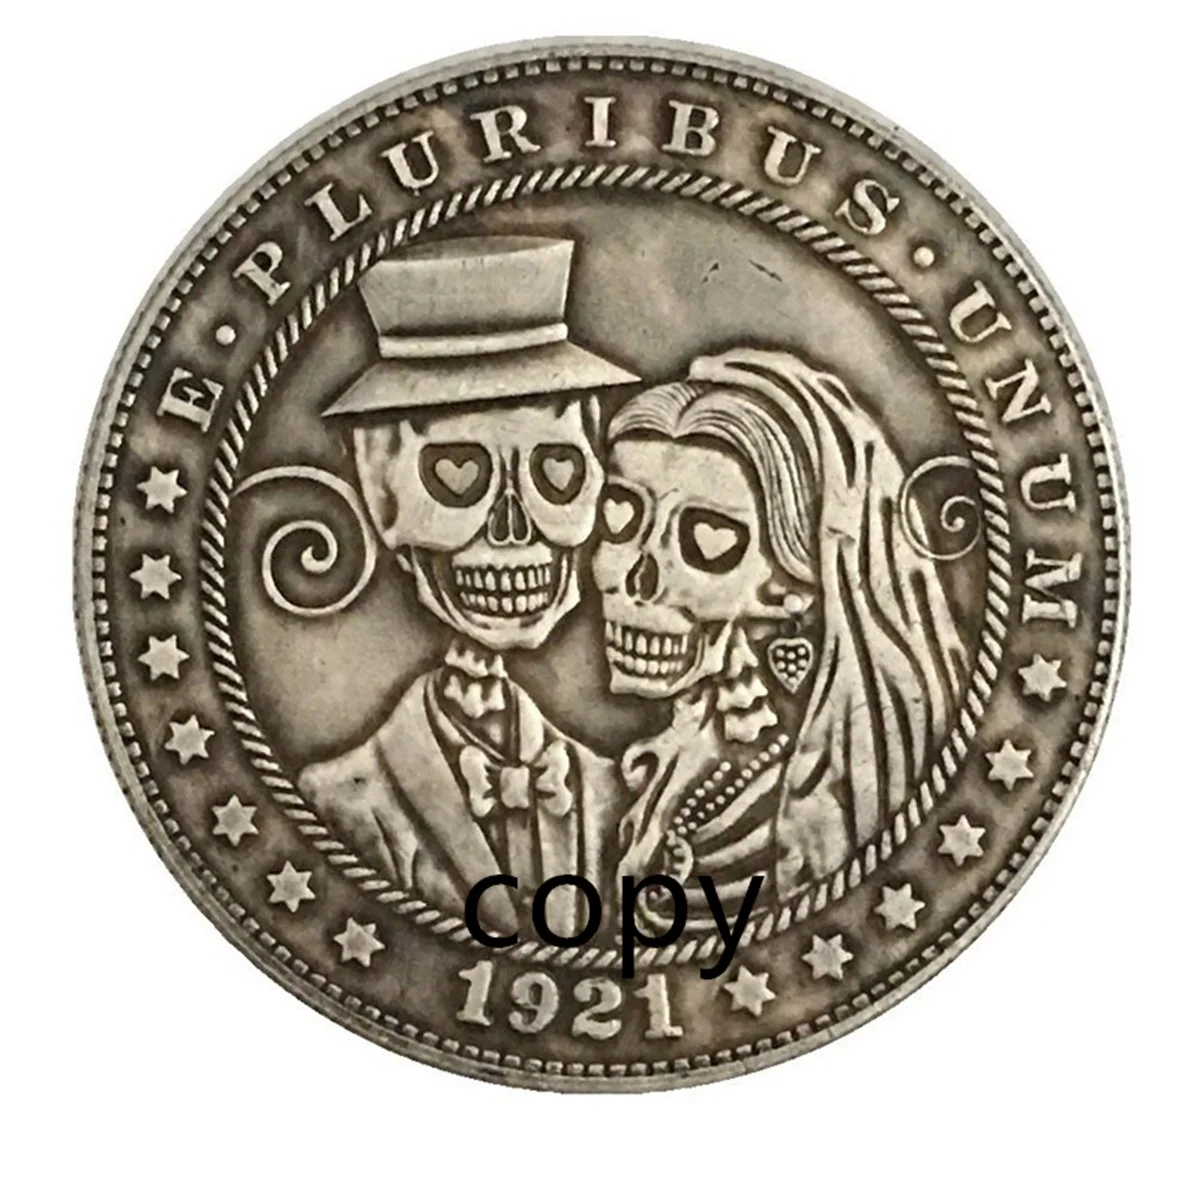 

Skeleton love HOBO COIN Rangers COIN US Coin Gift Challenge REPLICA Commemorative Coin - REPLICA Coin Medal Coins Collection